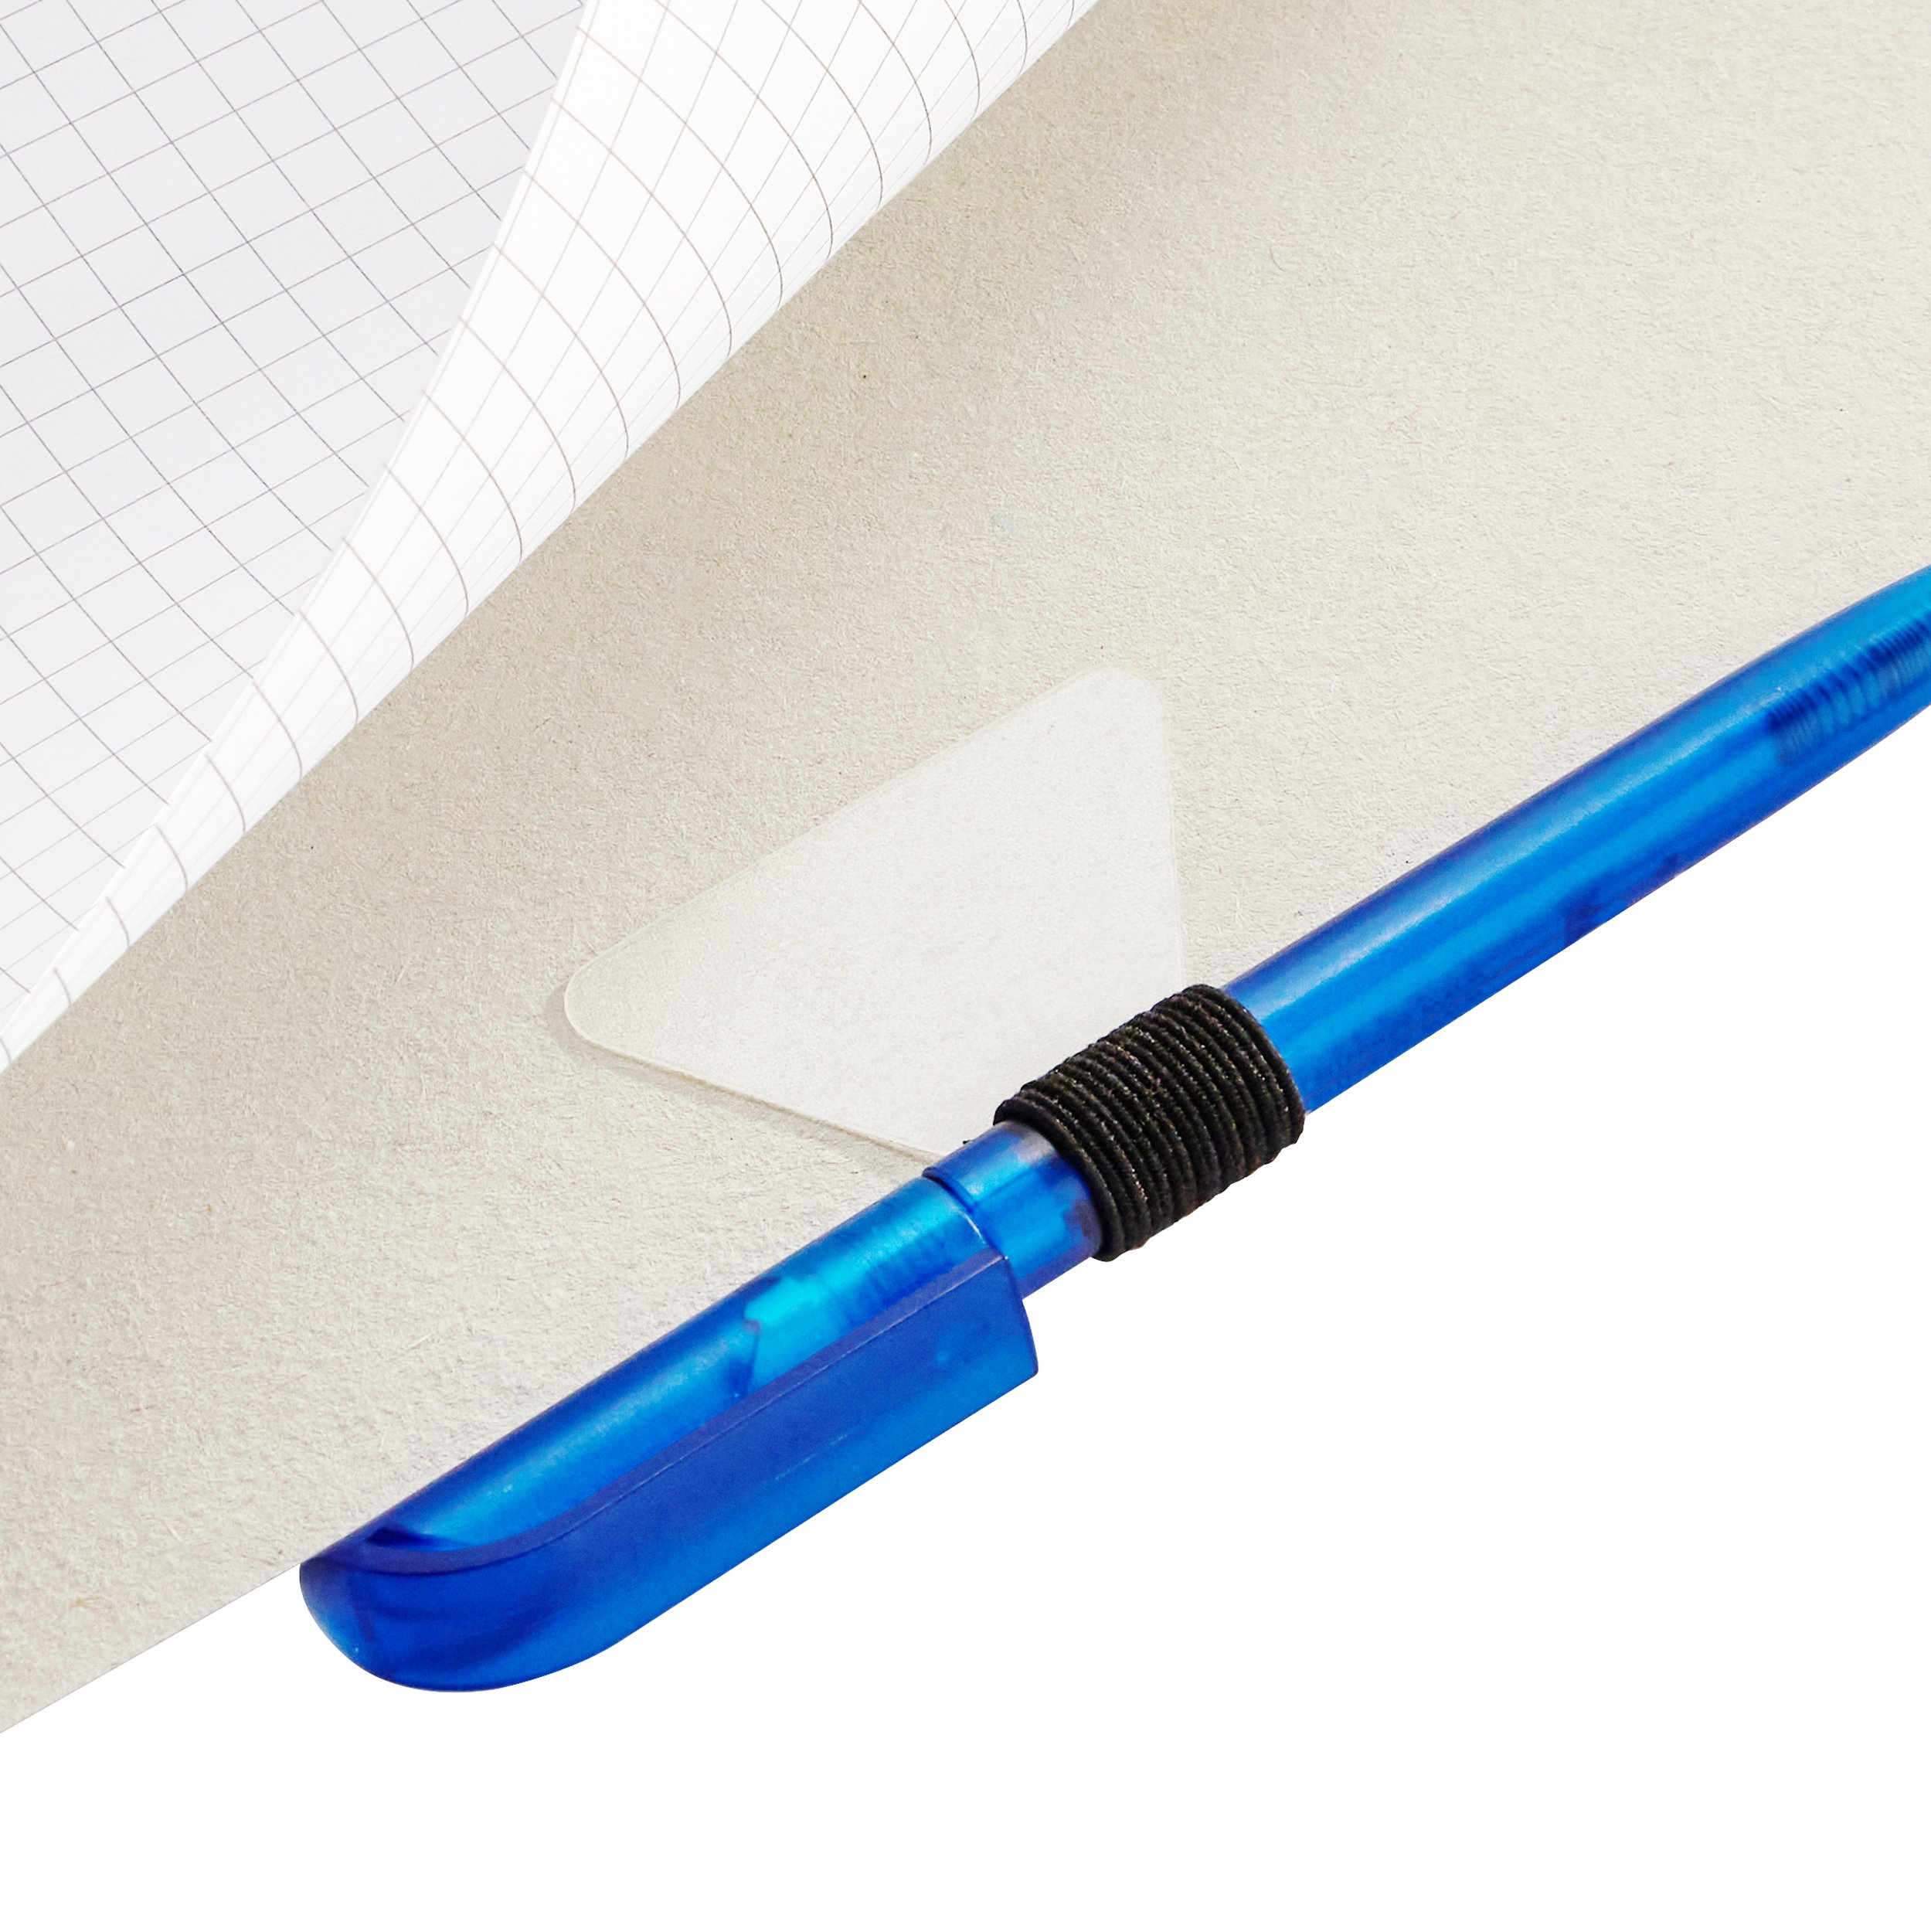 4 Stück Stiftschlaufe für Notebook,Stift Clip für Notebook Retro